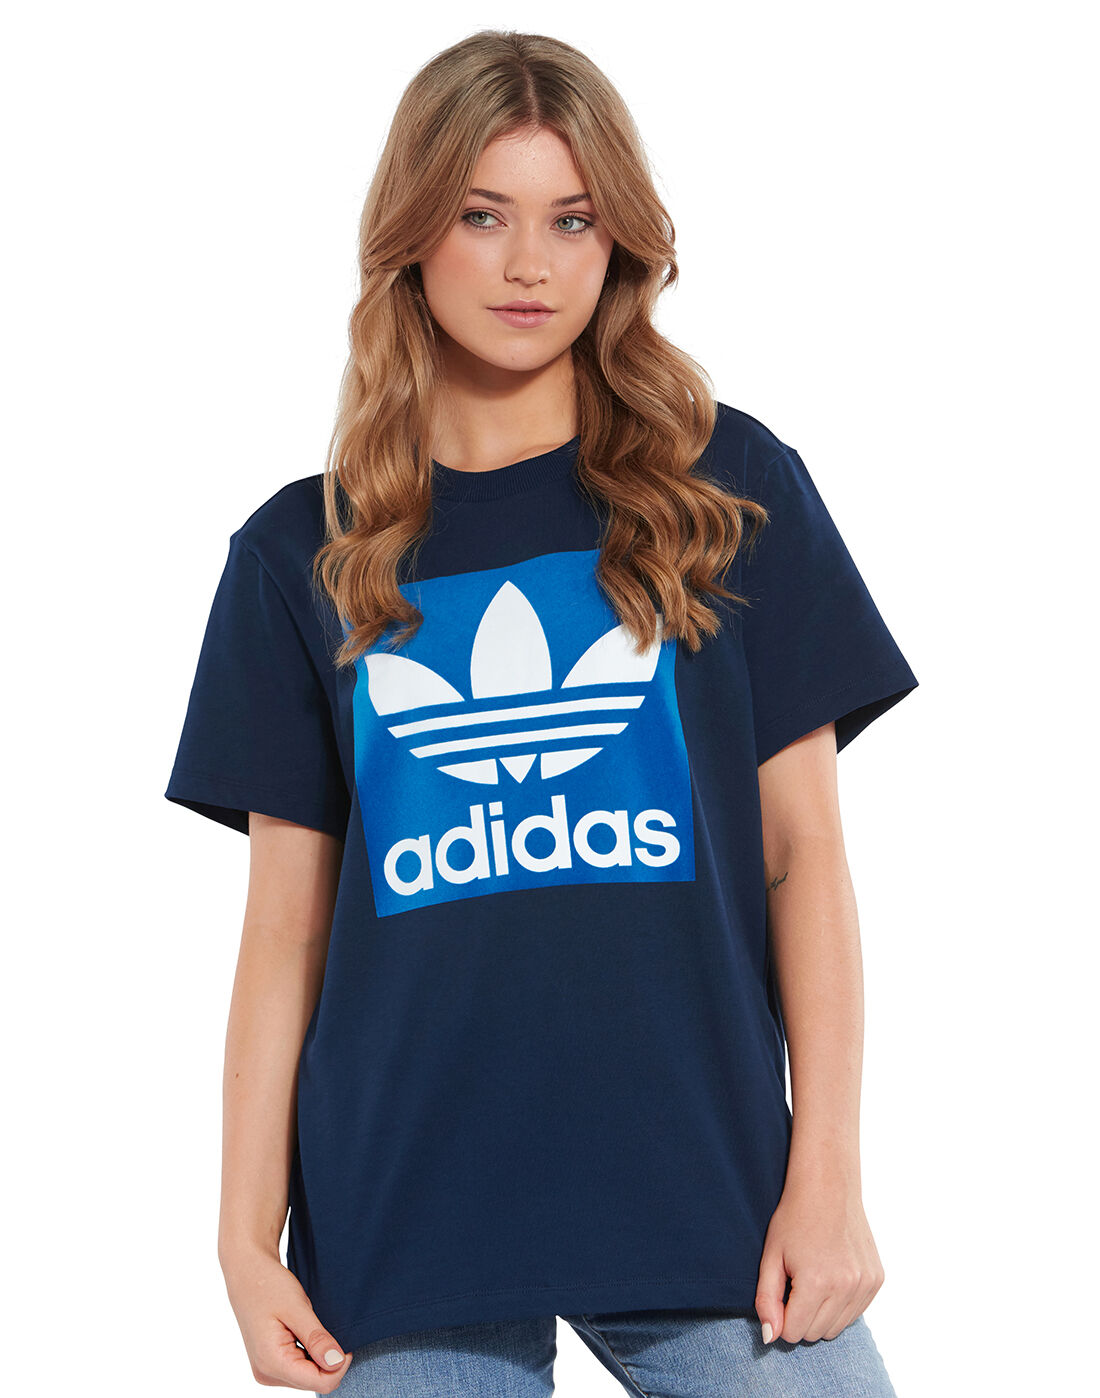 blue adidas t shirt women's